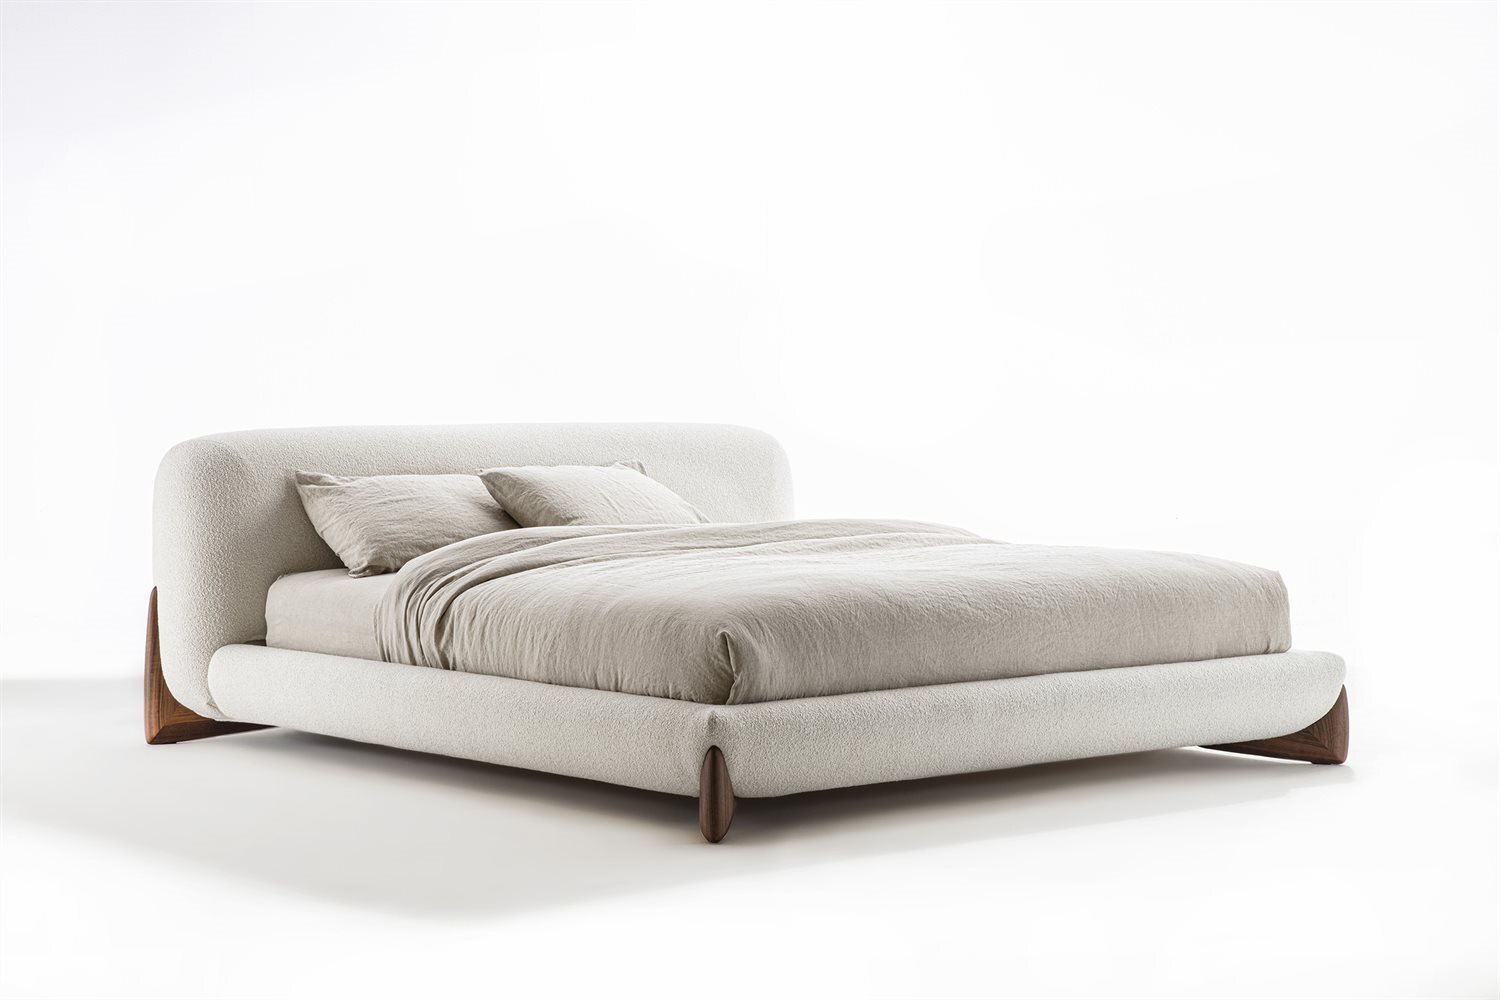 Купить Кровать Softbay bed Porada в магазине итальянской мебели Irice home